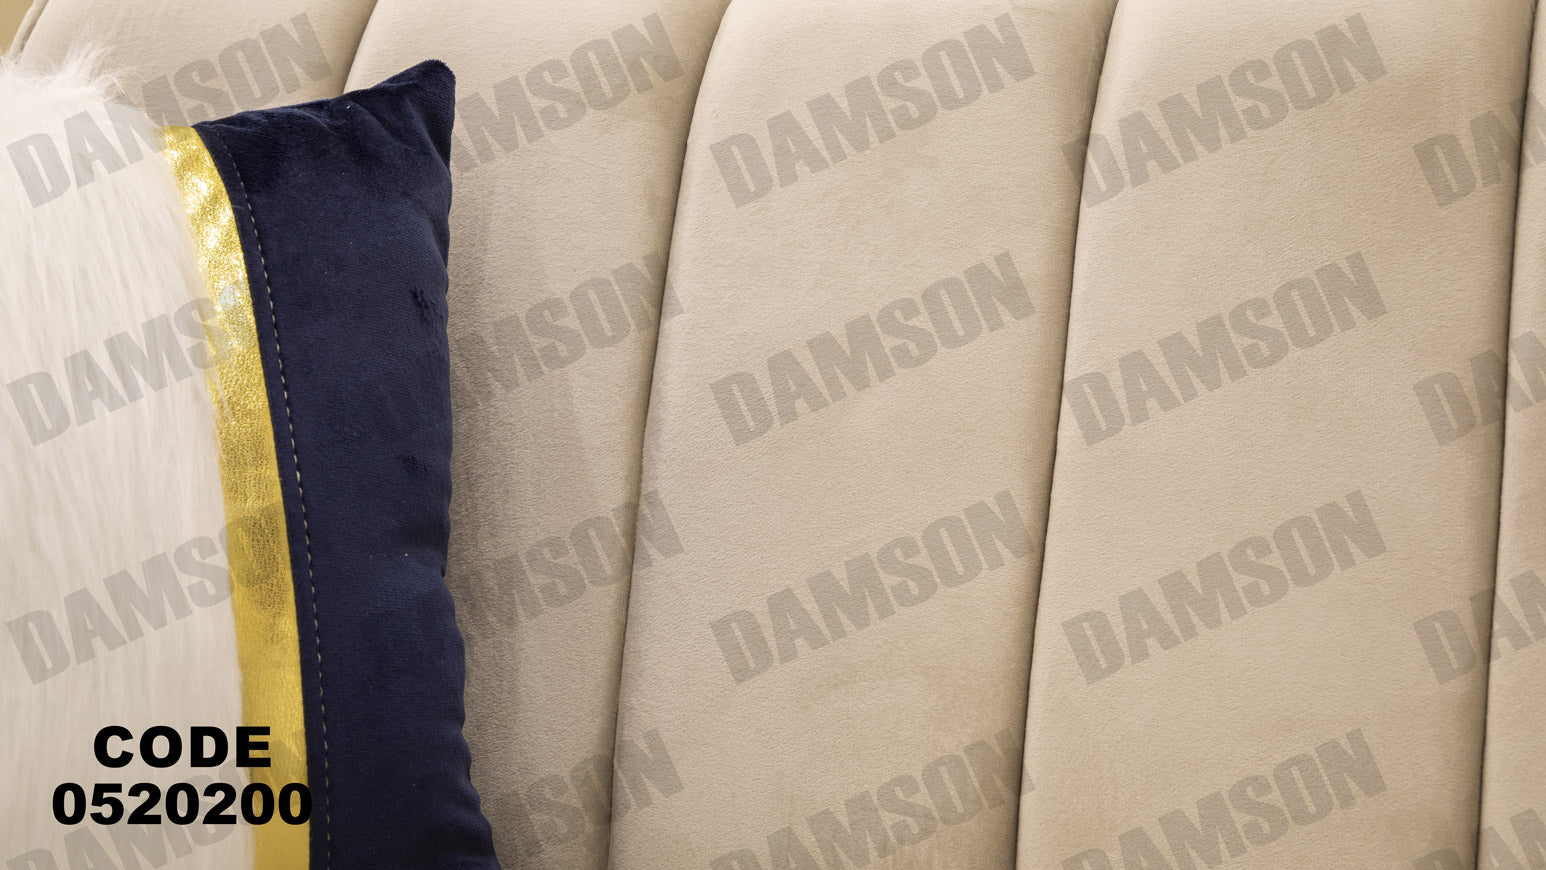 انترية سرير 202 - Damson Furnitureانترية سرير 202